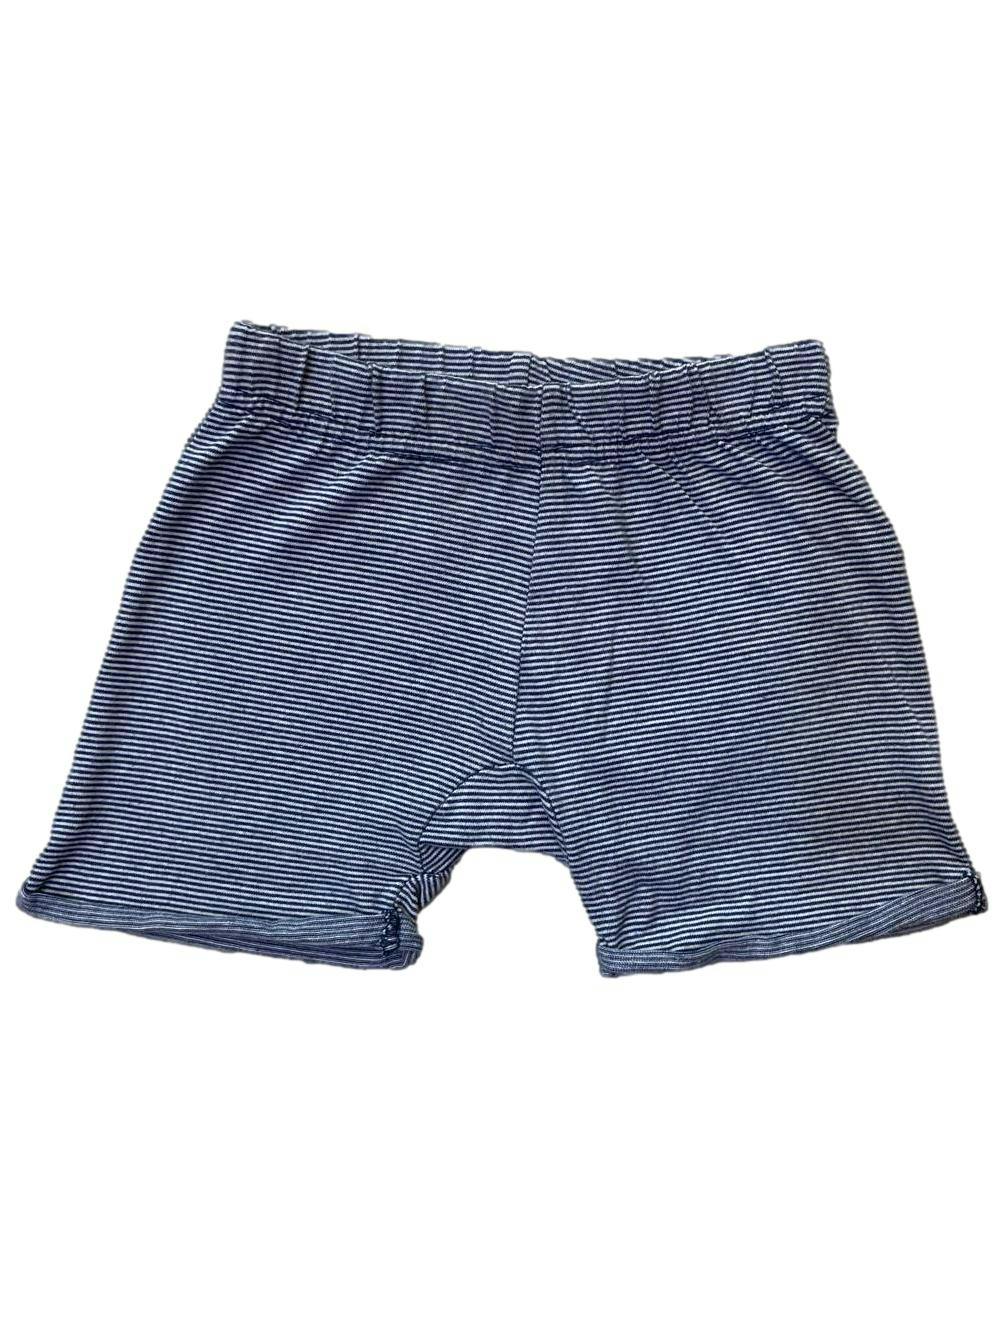 Short Yamp a rayas azules y blancas, de algodón, con elástico en cintura.